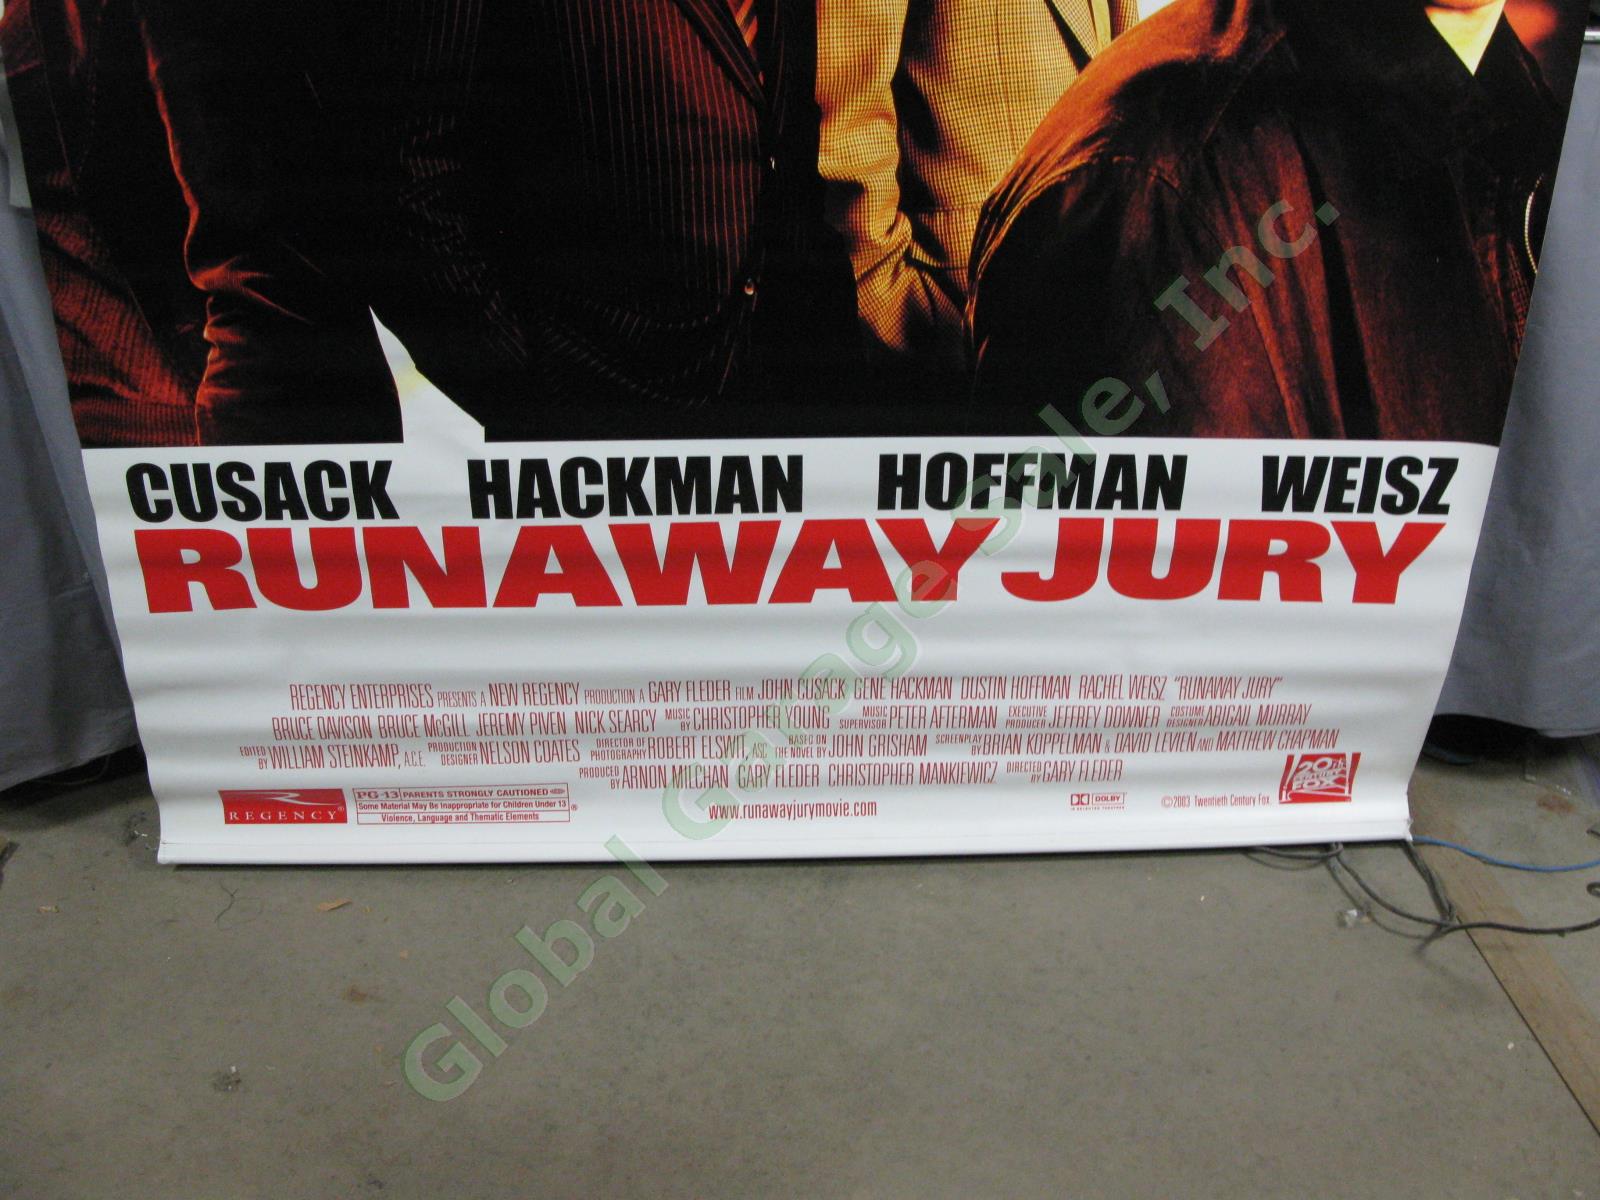 HUGE Runaway Jury Original Movie Theater Poster Banner Cusack Hackman Hoffman 2